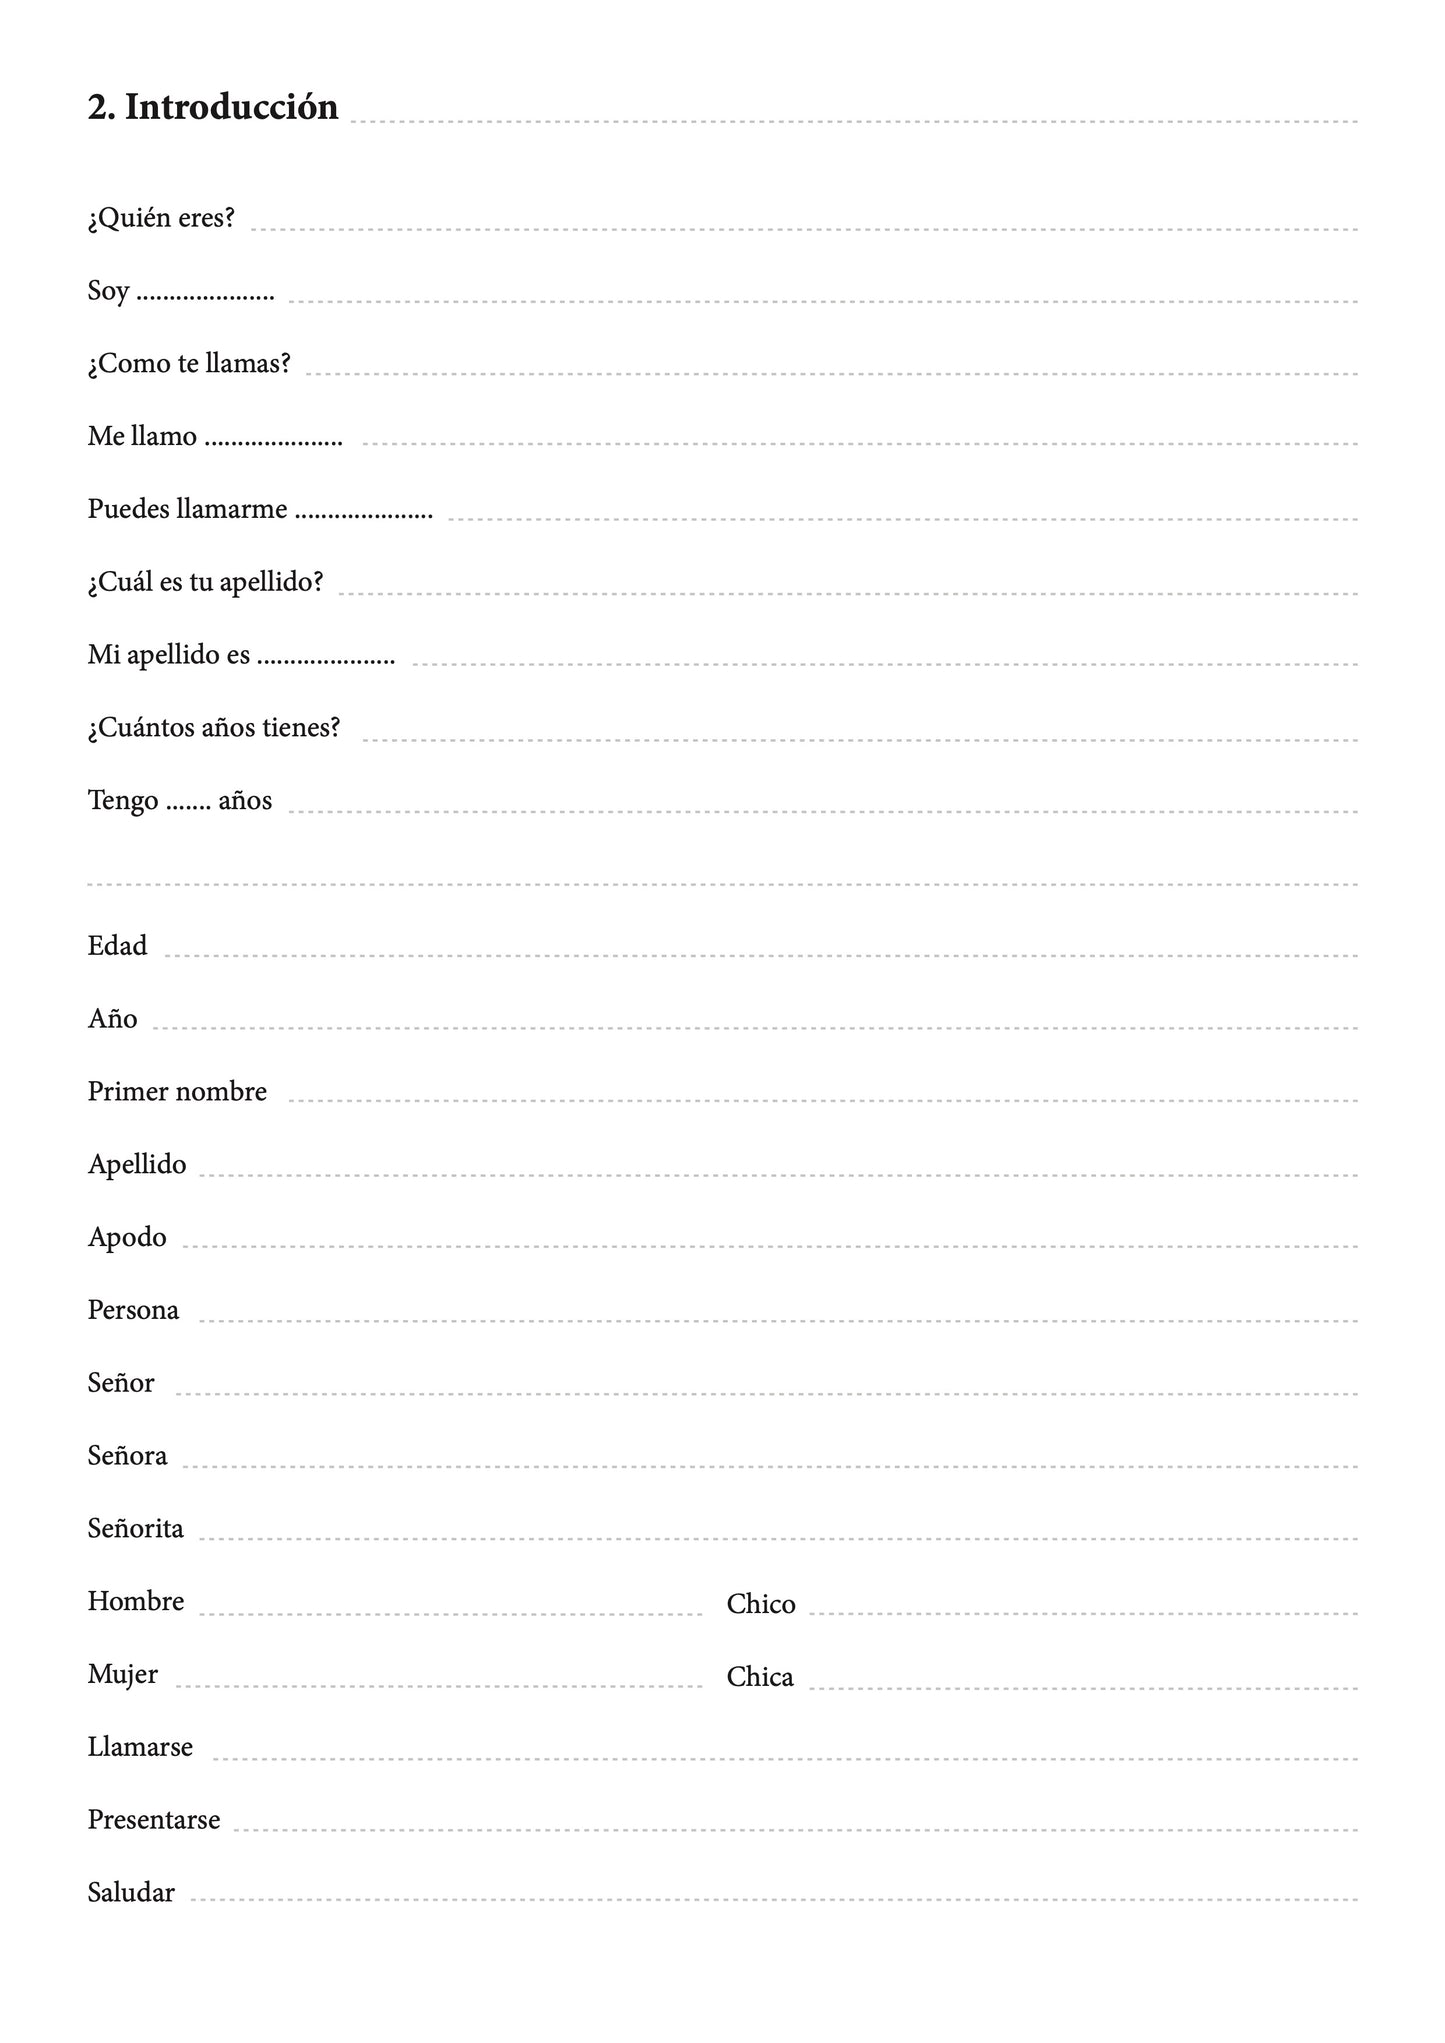 Español-chichewa cuaderno de vocabulario